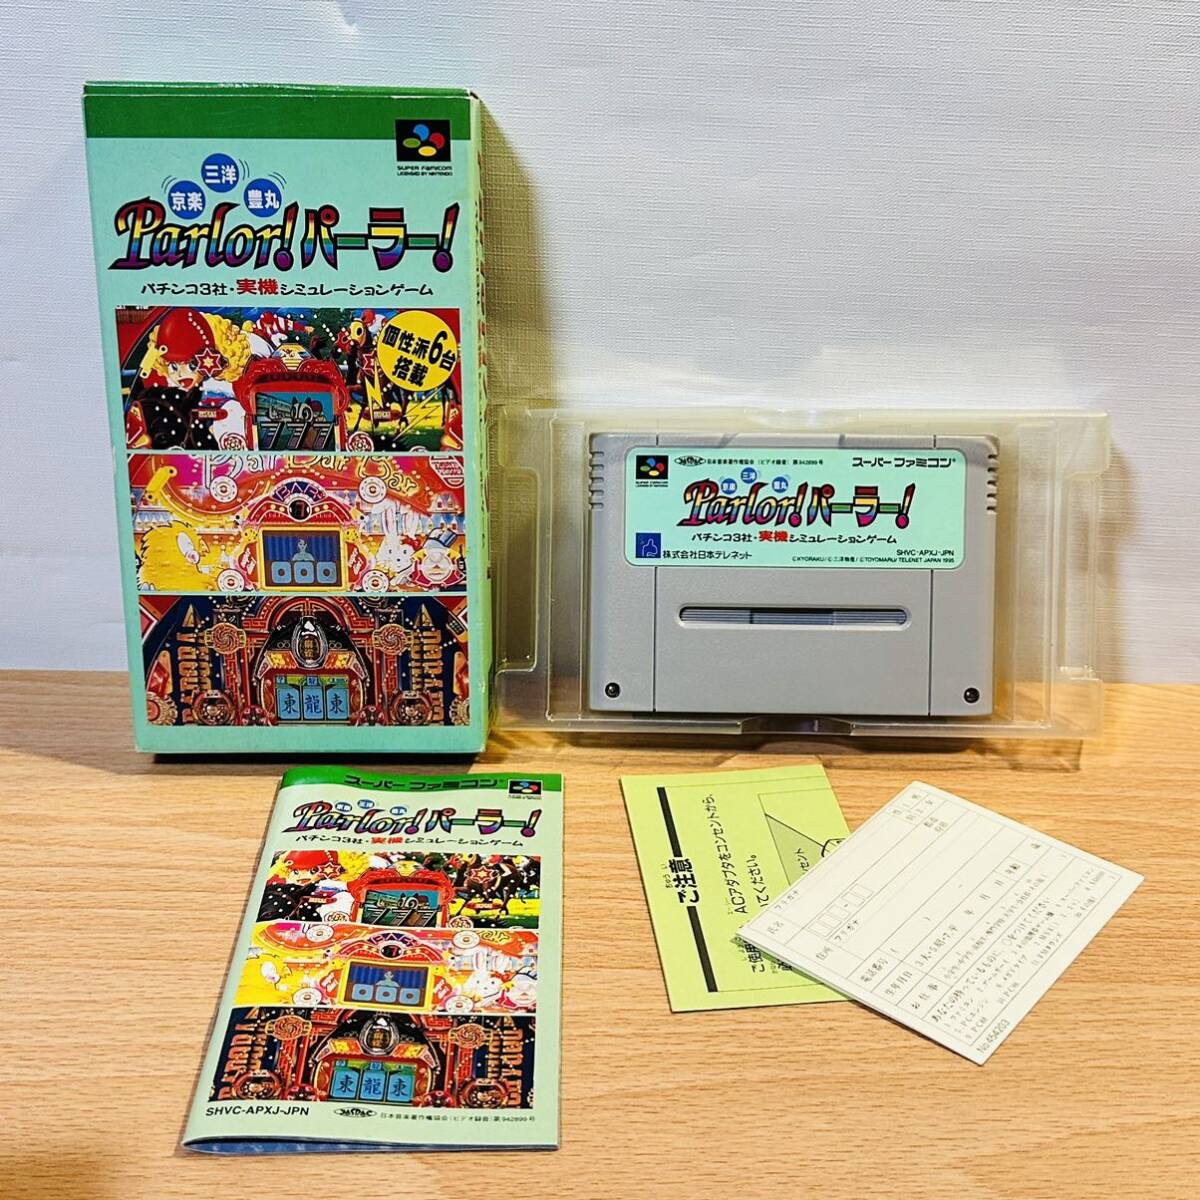  Super Famicom SFC с коробкой инструкция имеется soft кассета игра столица приятный * Sanyo *. круг Parlor! parlor!